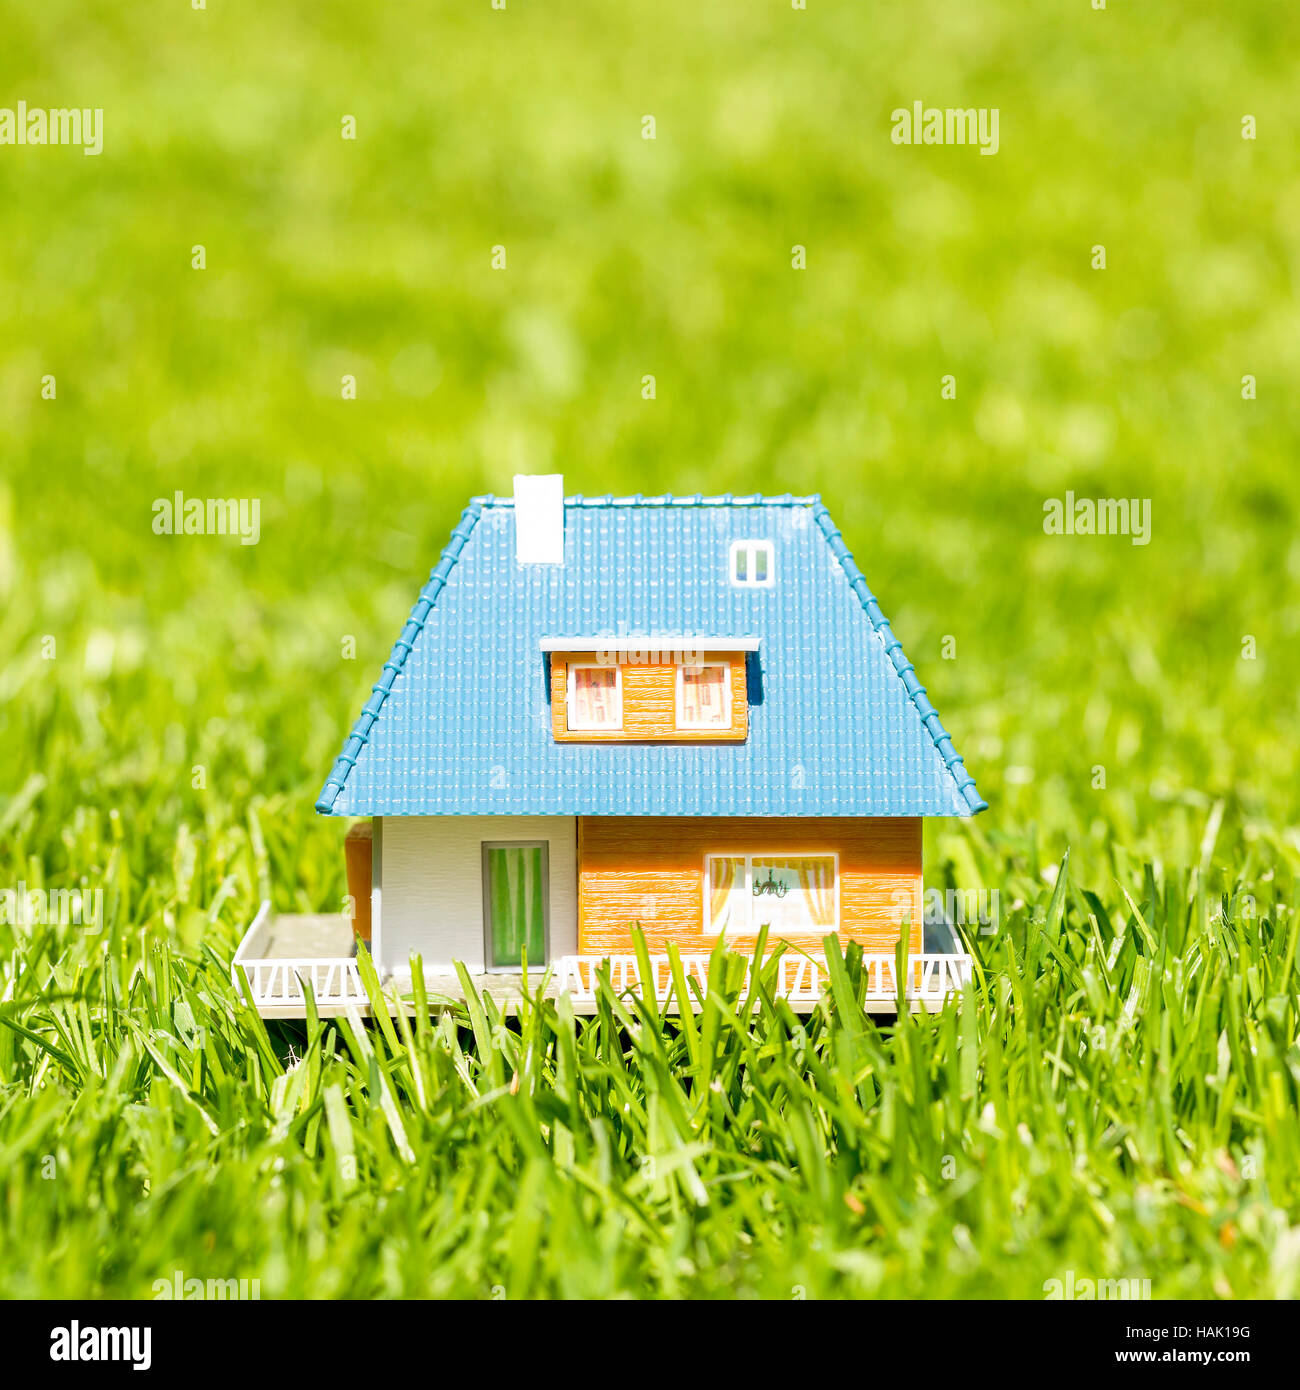 Petite maison en plastique sur l'herbe verte Banque D'Images